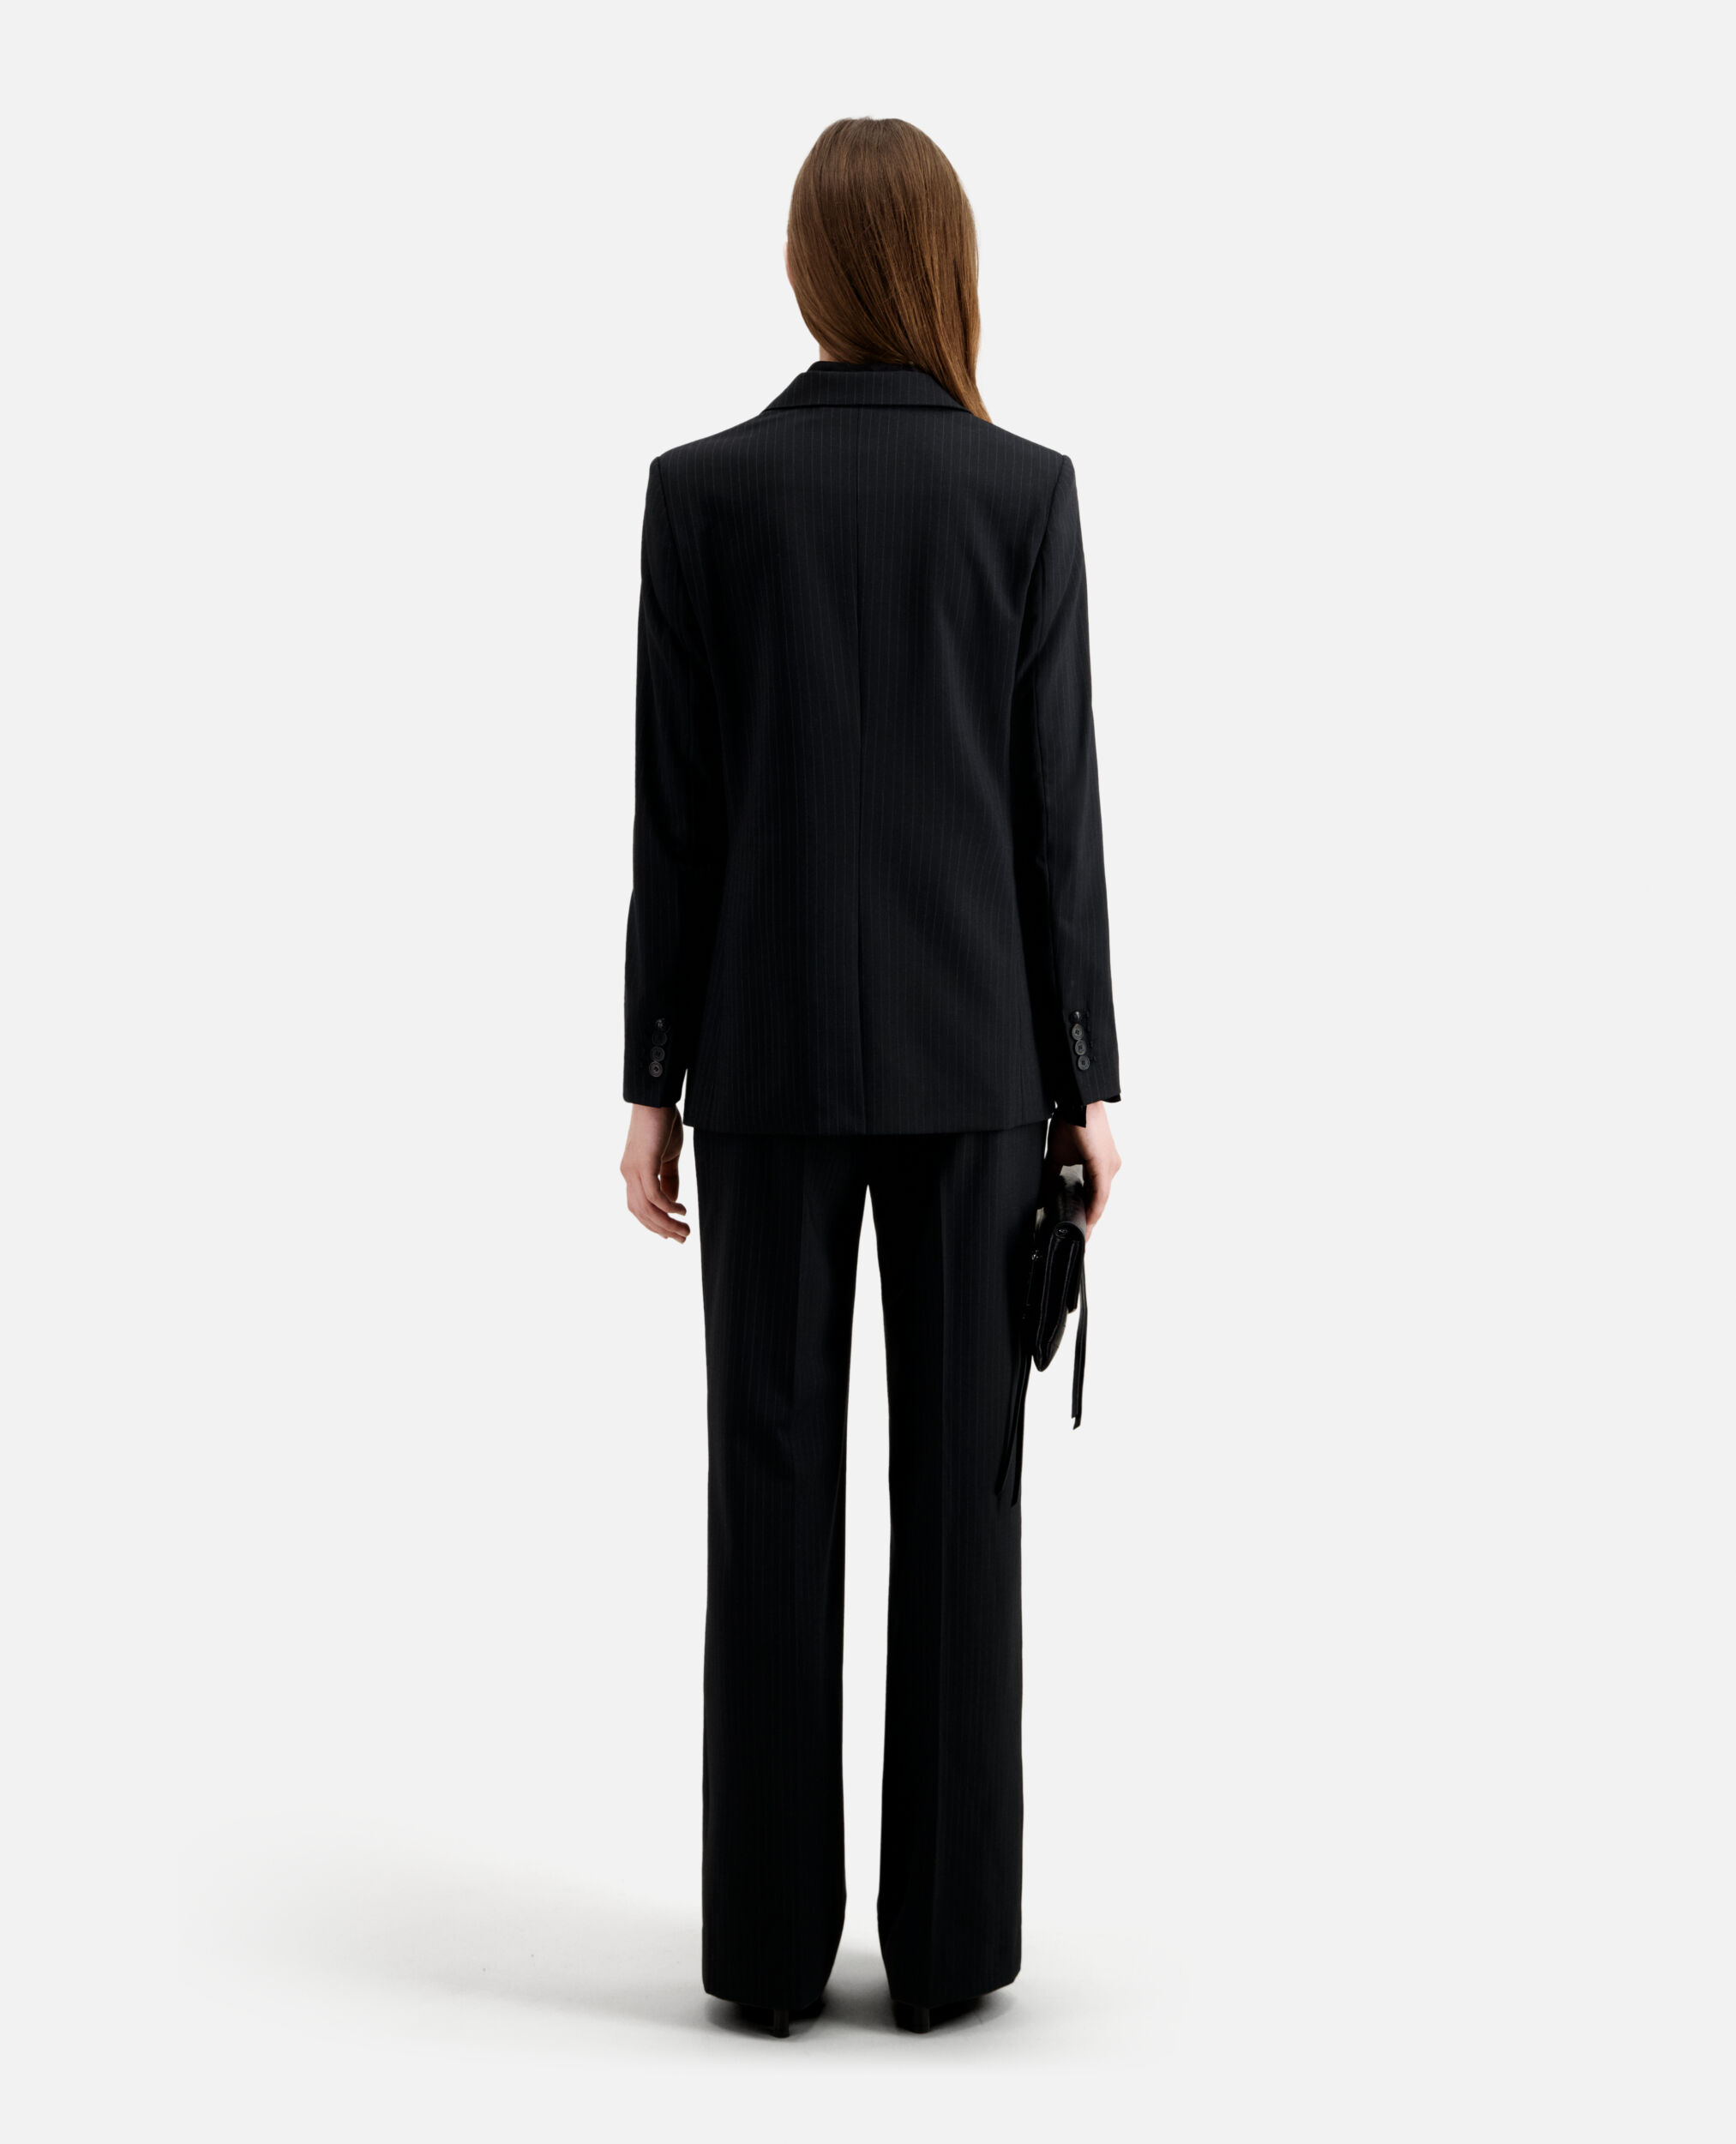 Veste tailleur noire à rayures en laine mélangée, BLACK WHITE, hi-res image number null